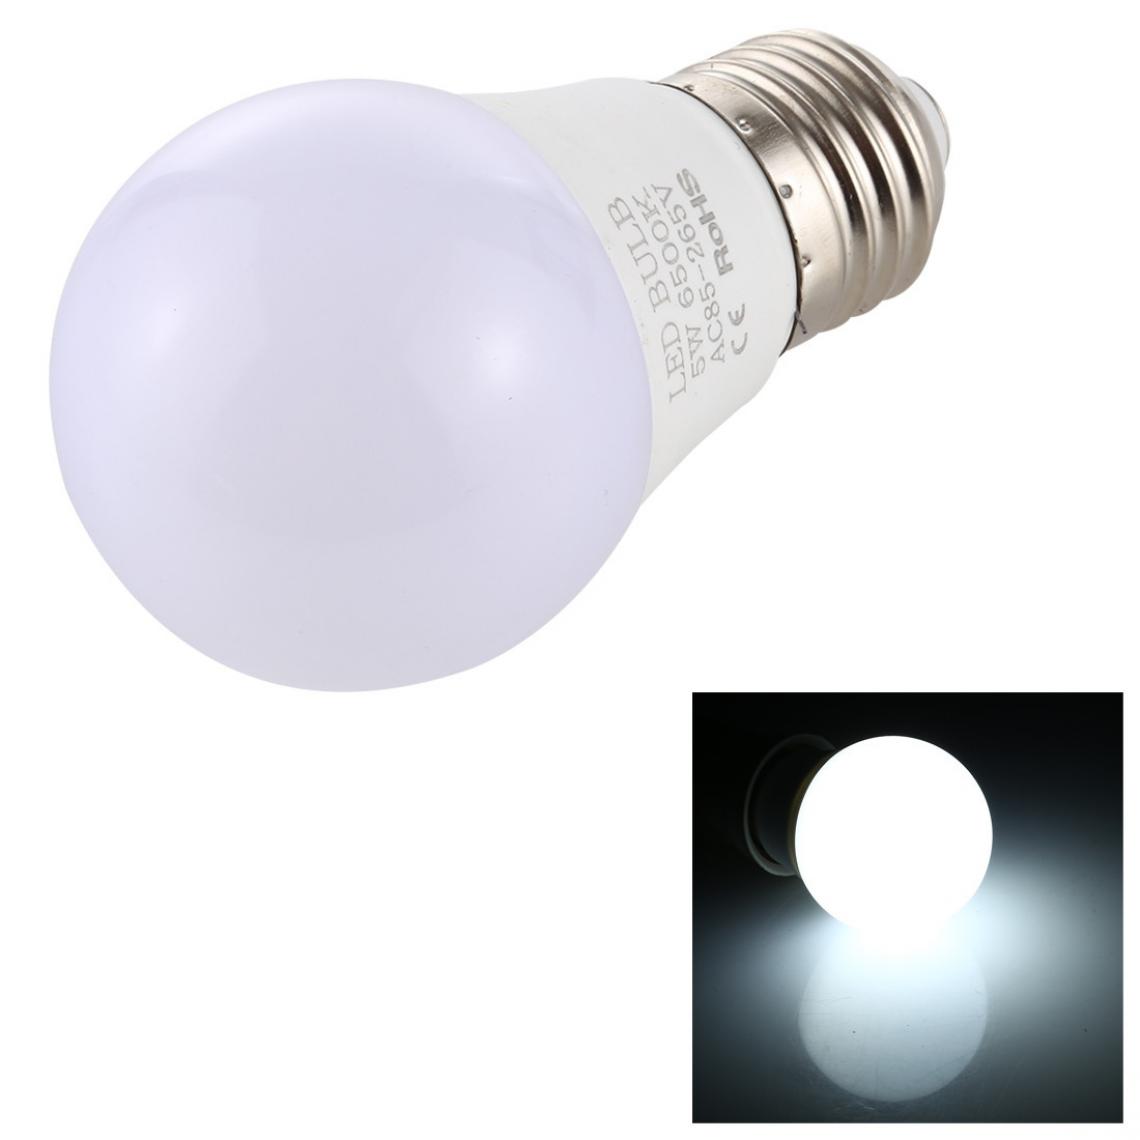 Wewoo - 5W 40LM LED ampoule à économie d'énergie lumière blanche 6000-6500K AC 85-265V - Ampoules LED